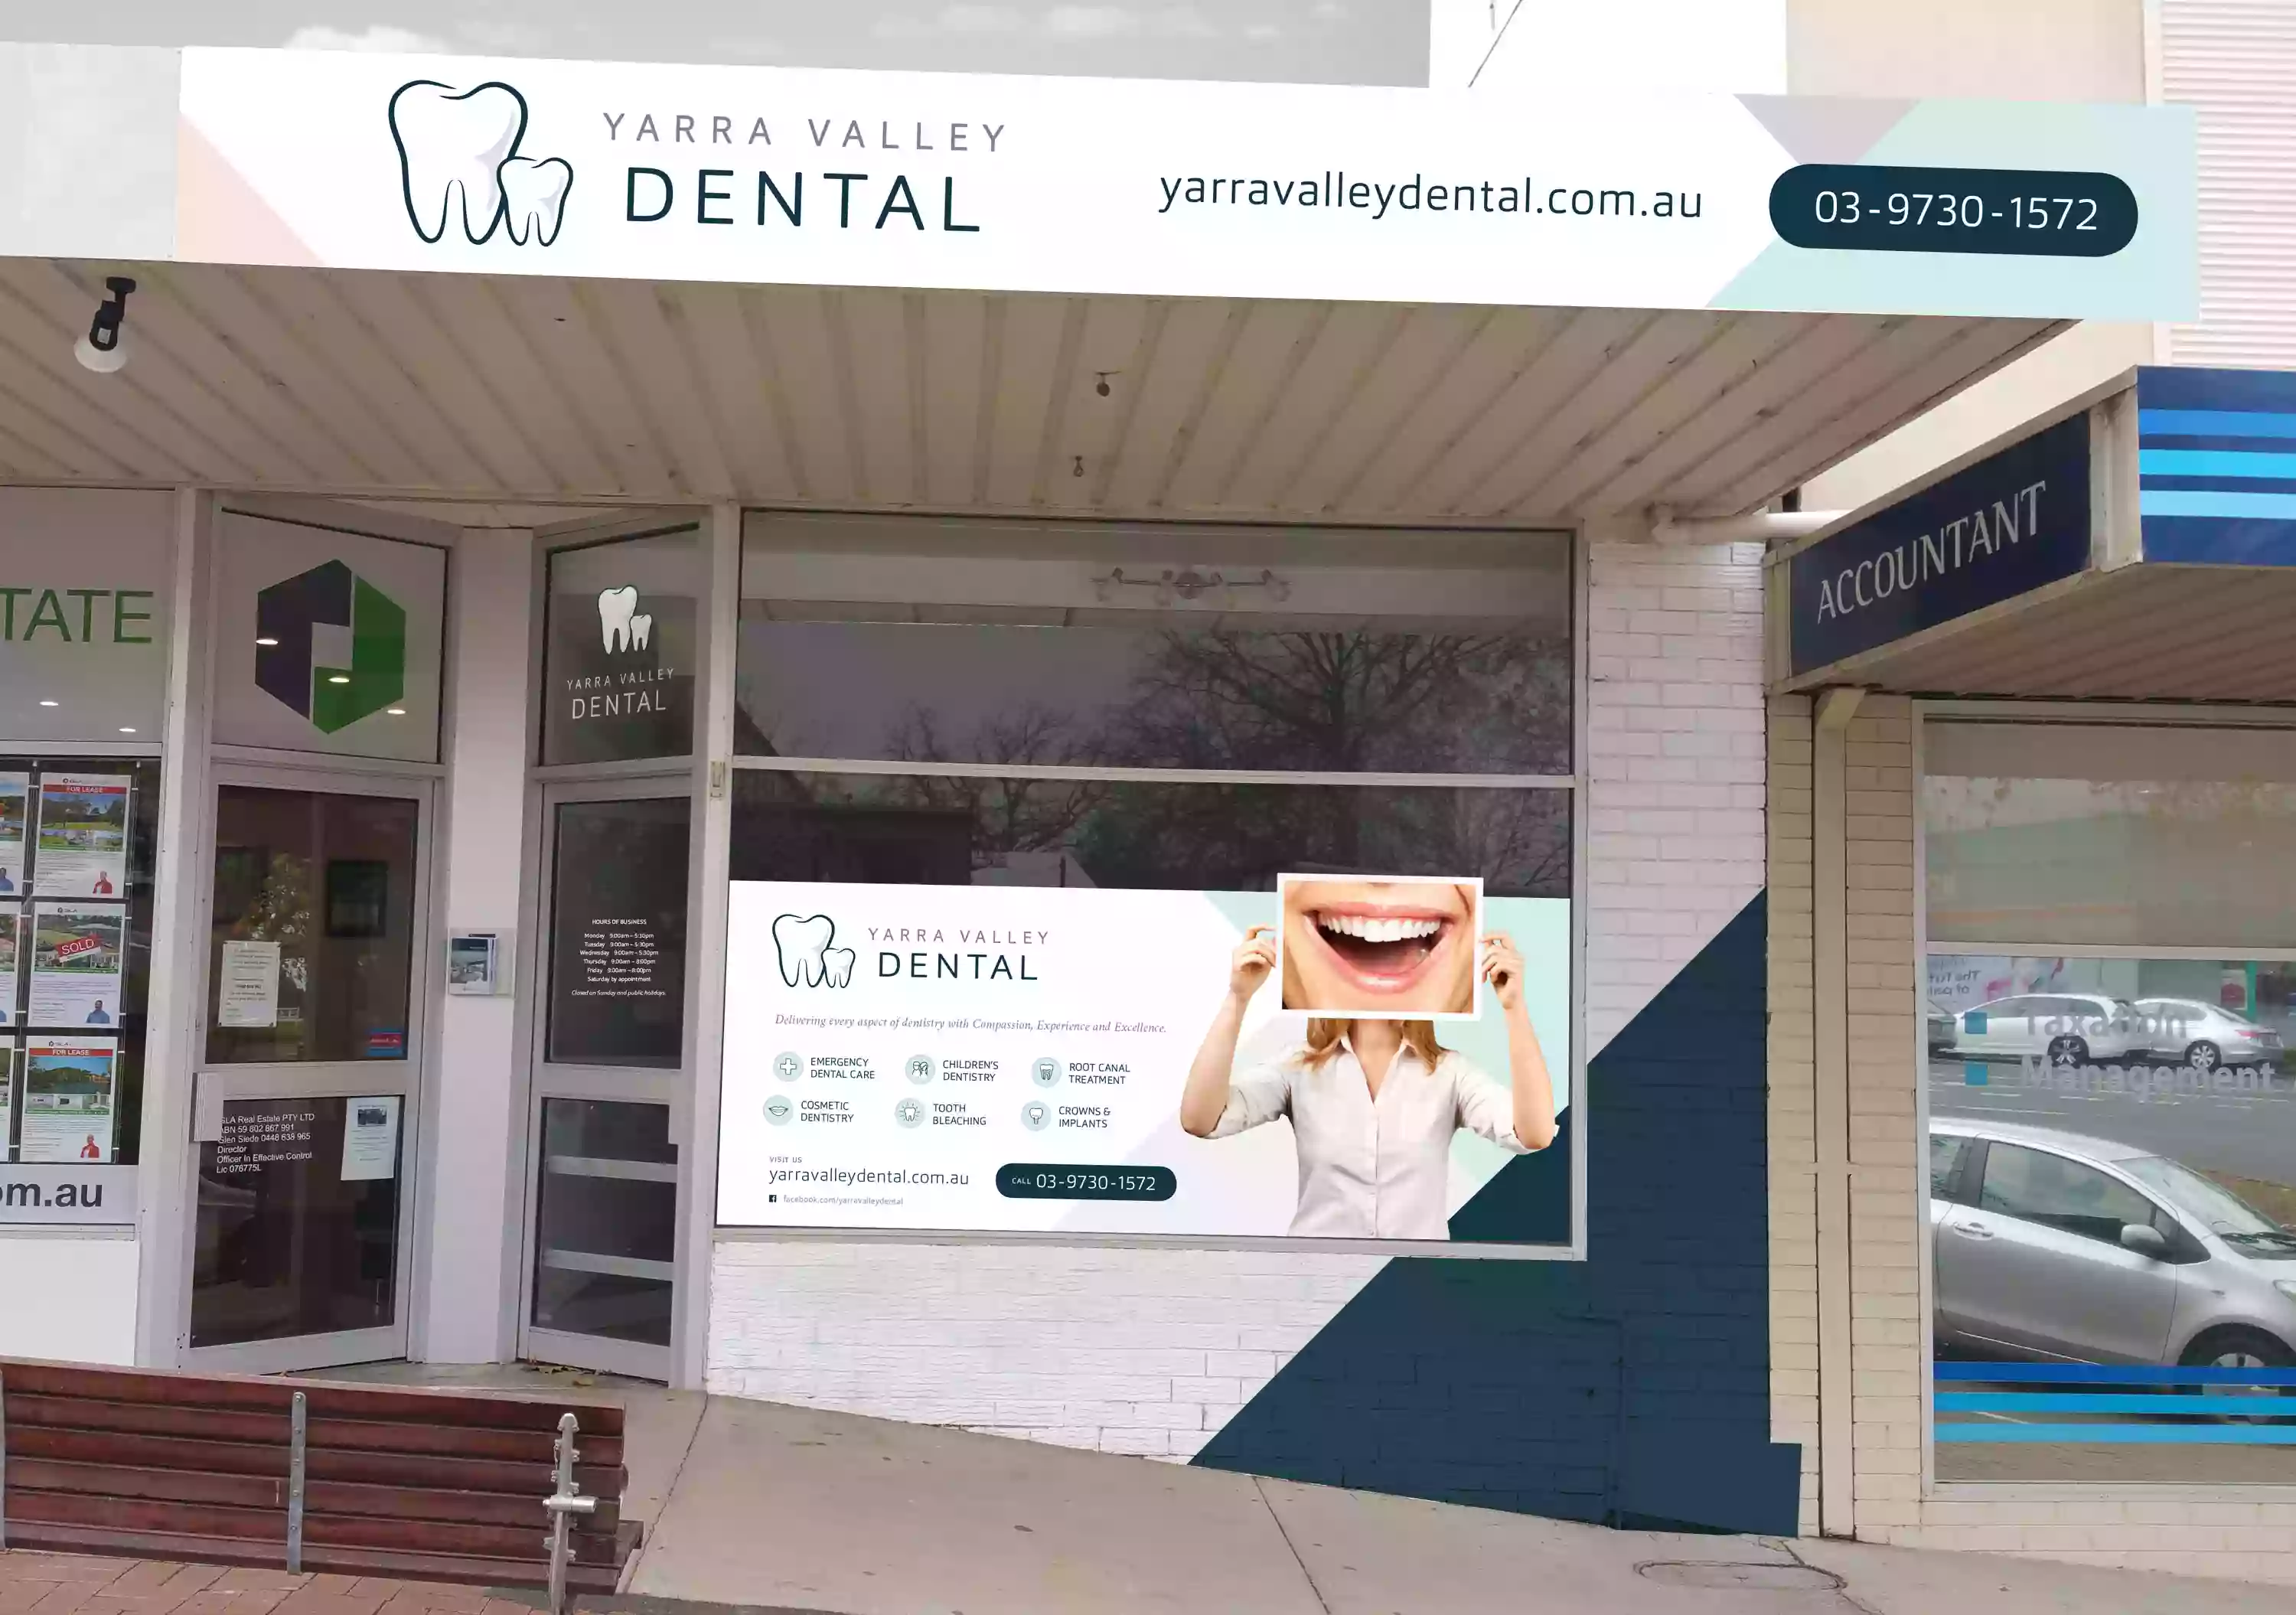 Yarra Valley Dental